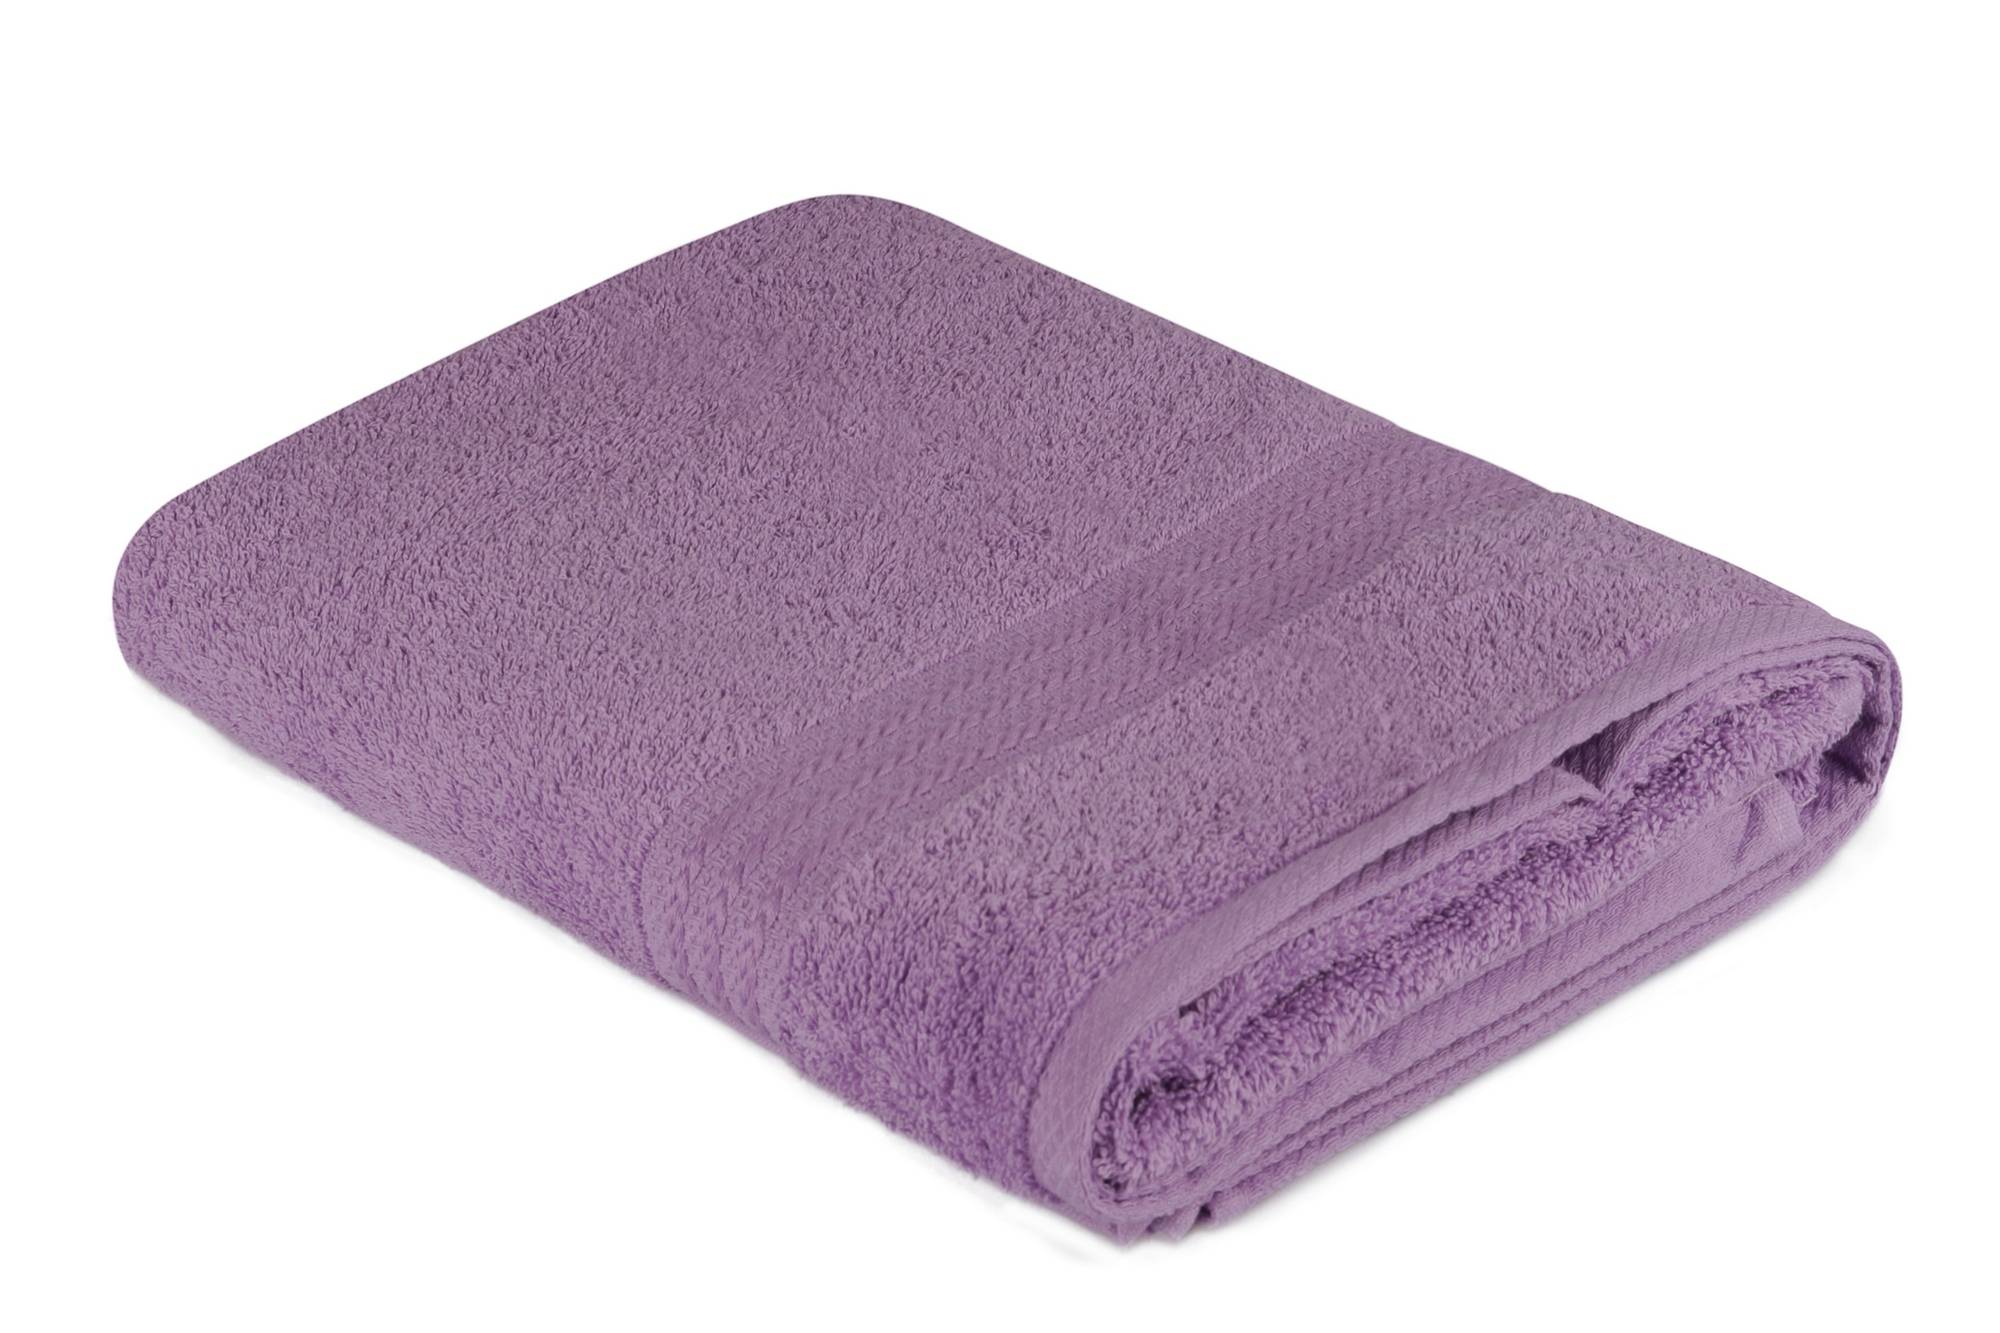  Sicco toalla de baño bordada de tres líneas 70 x 140 cm 100% algodón Lila